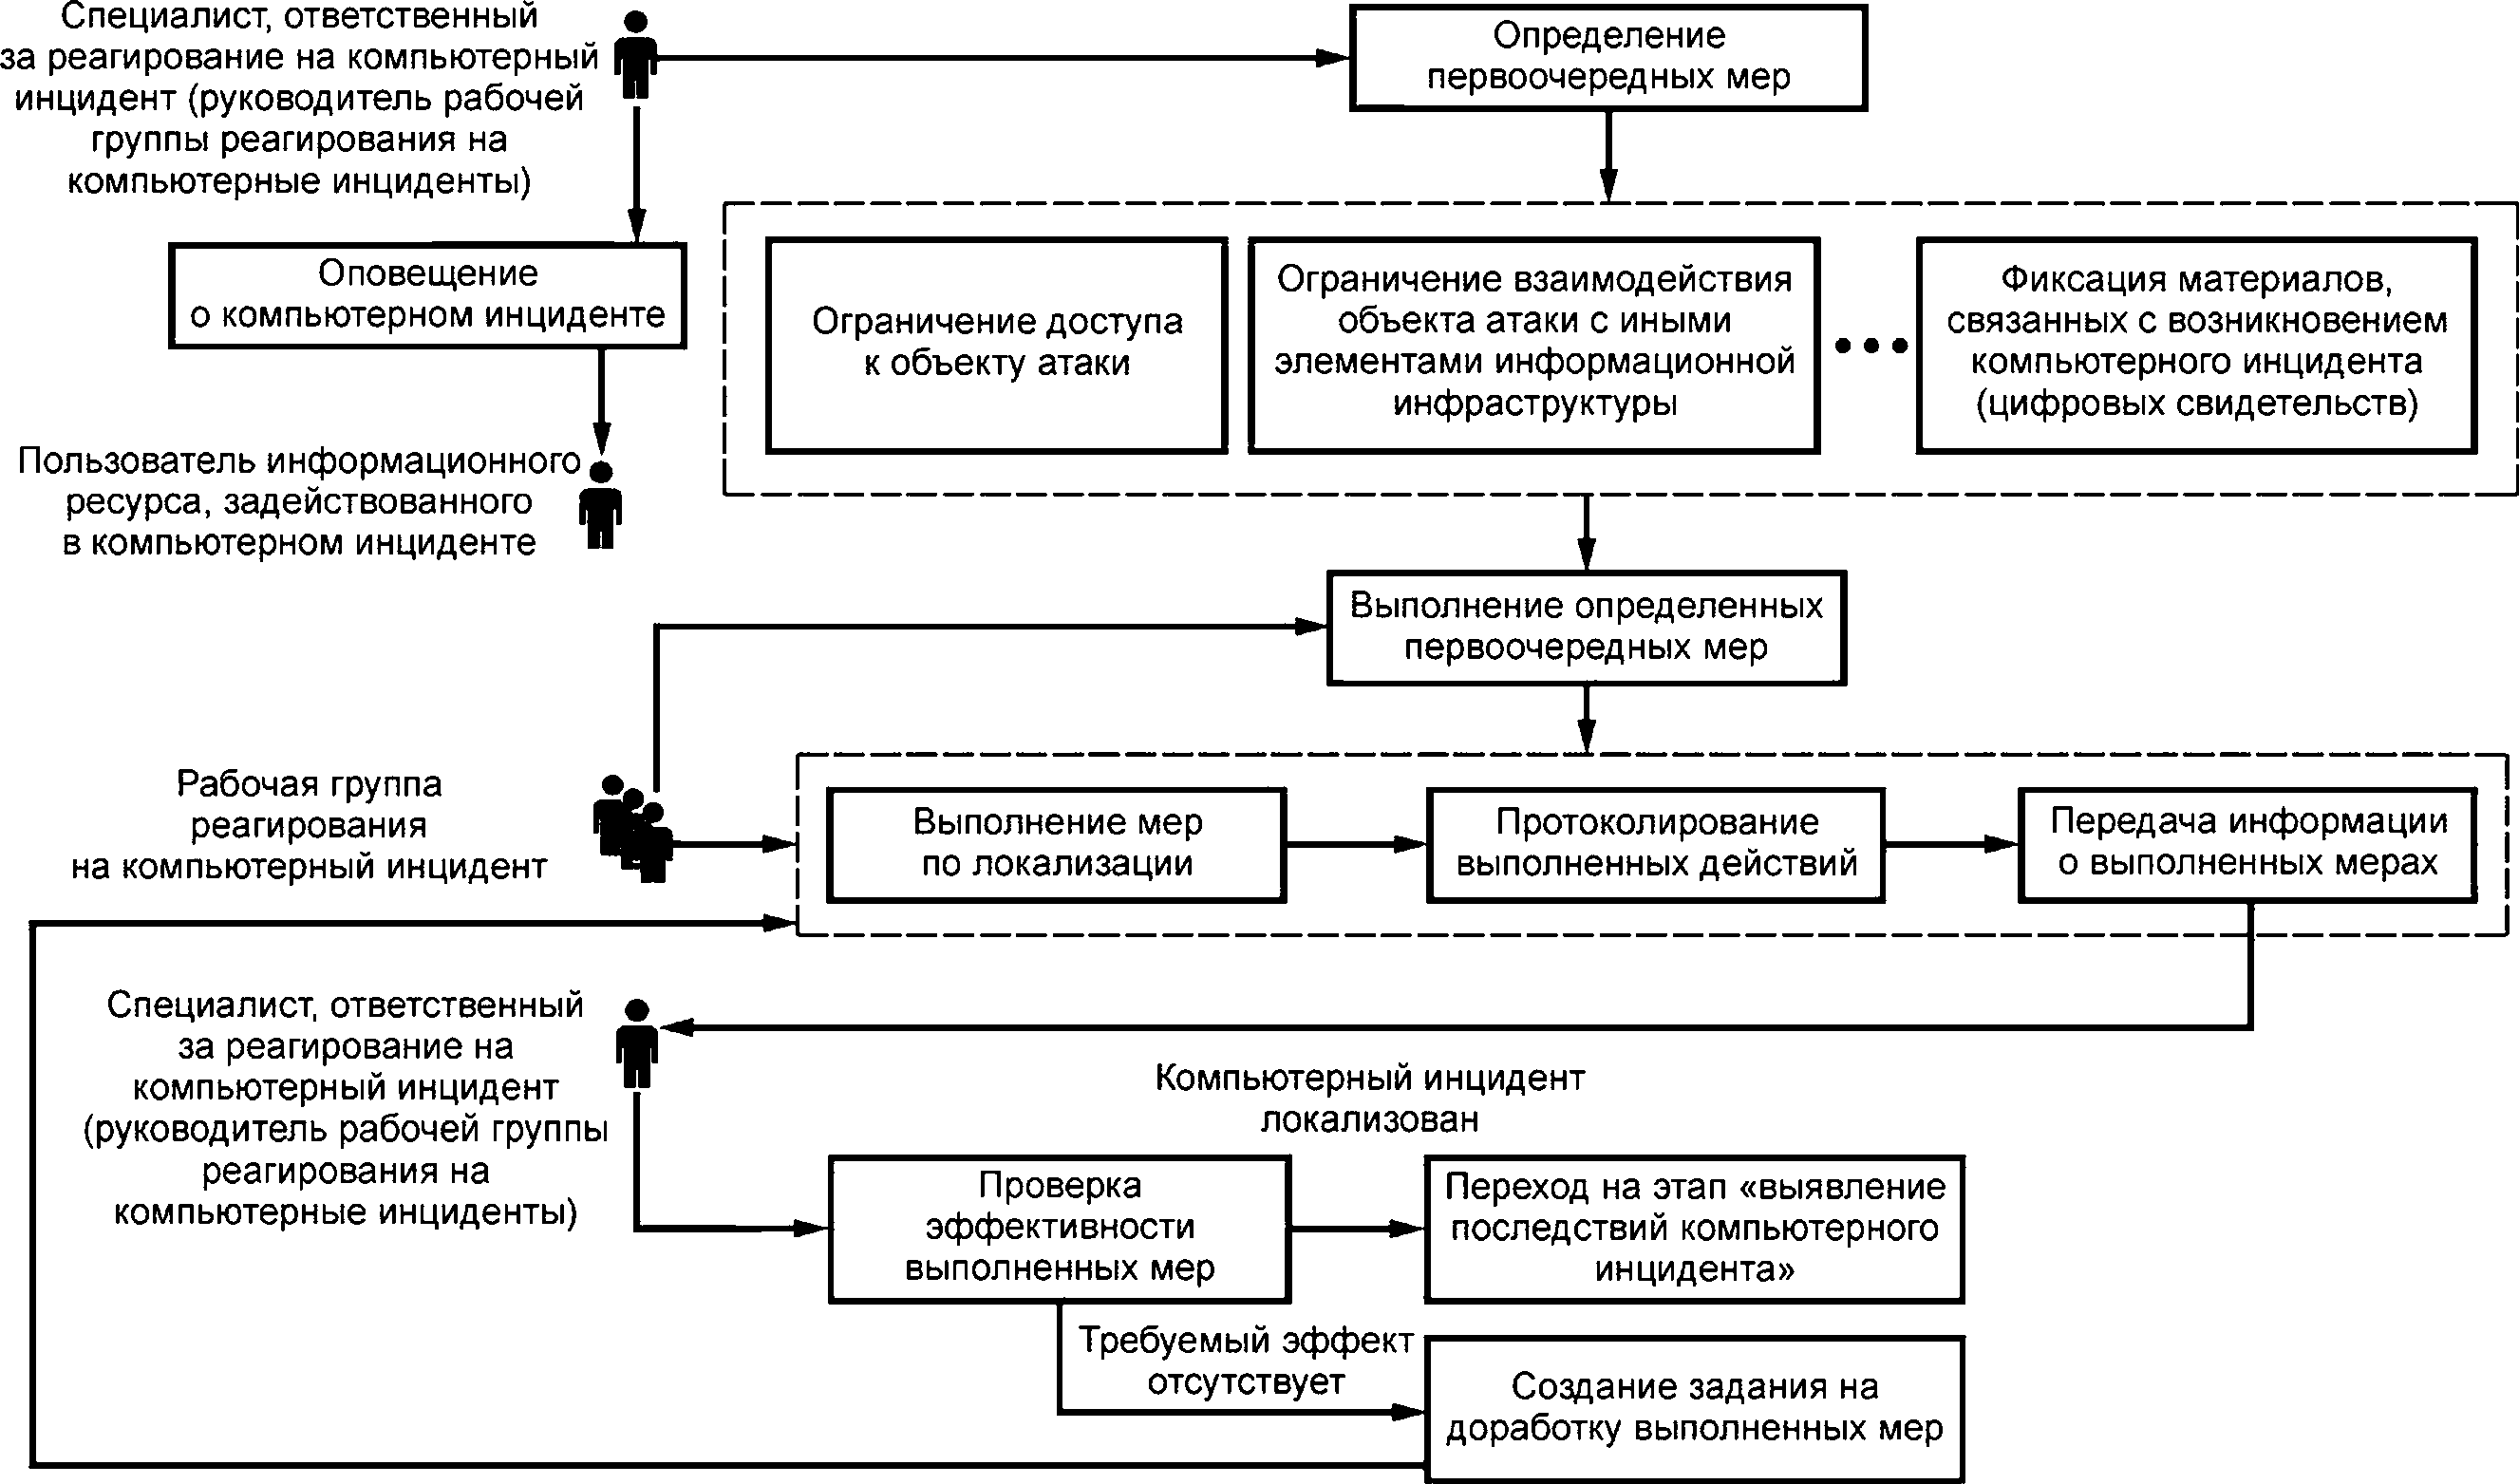 - Рисунок 2 - Схема организационного процесса этапа «локализация компьютерного инцидента»